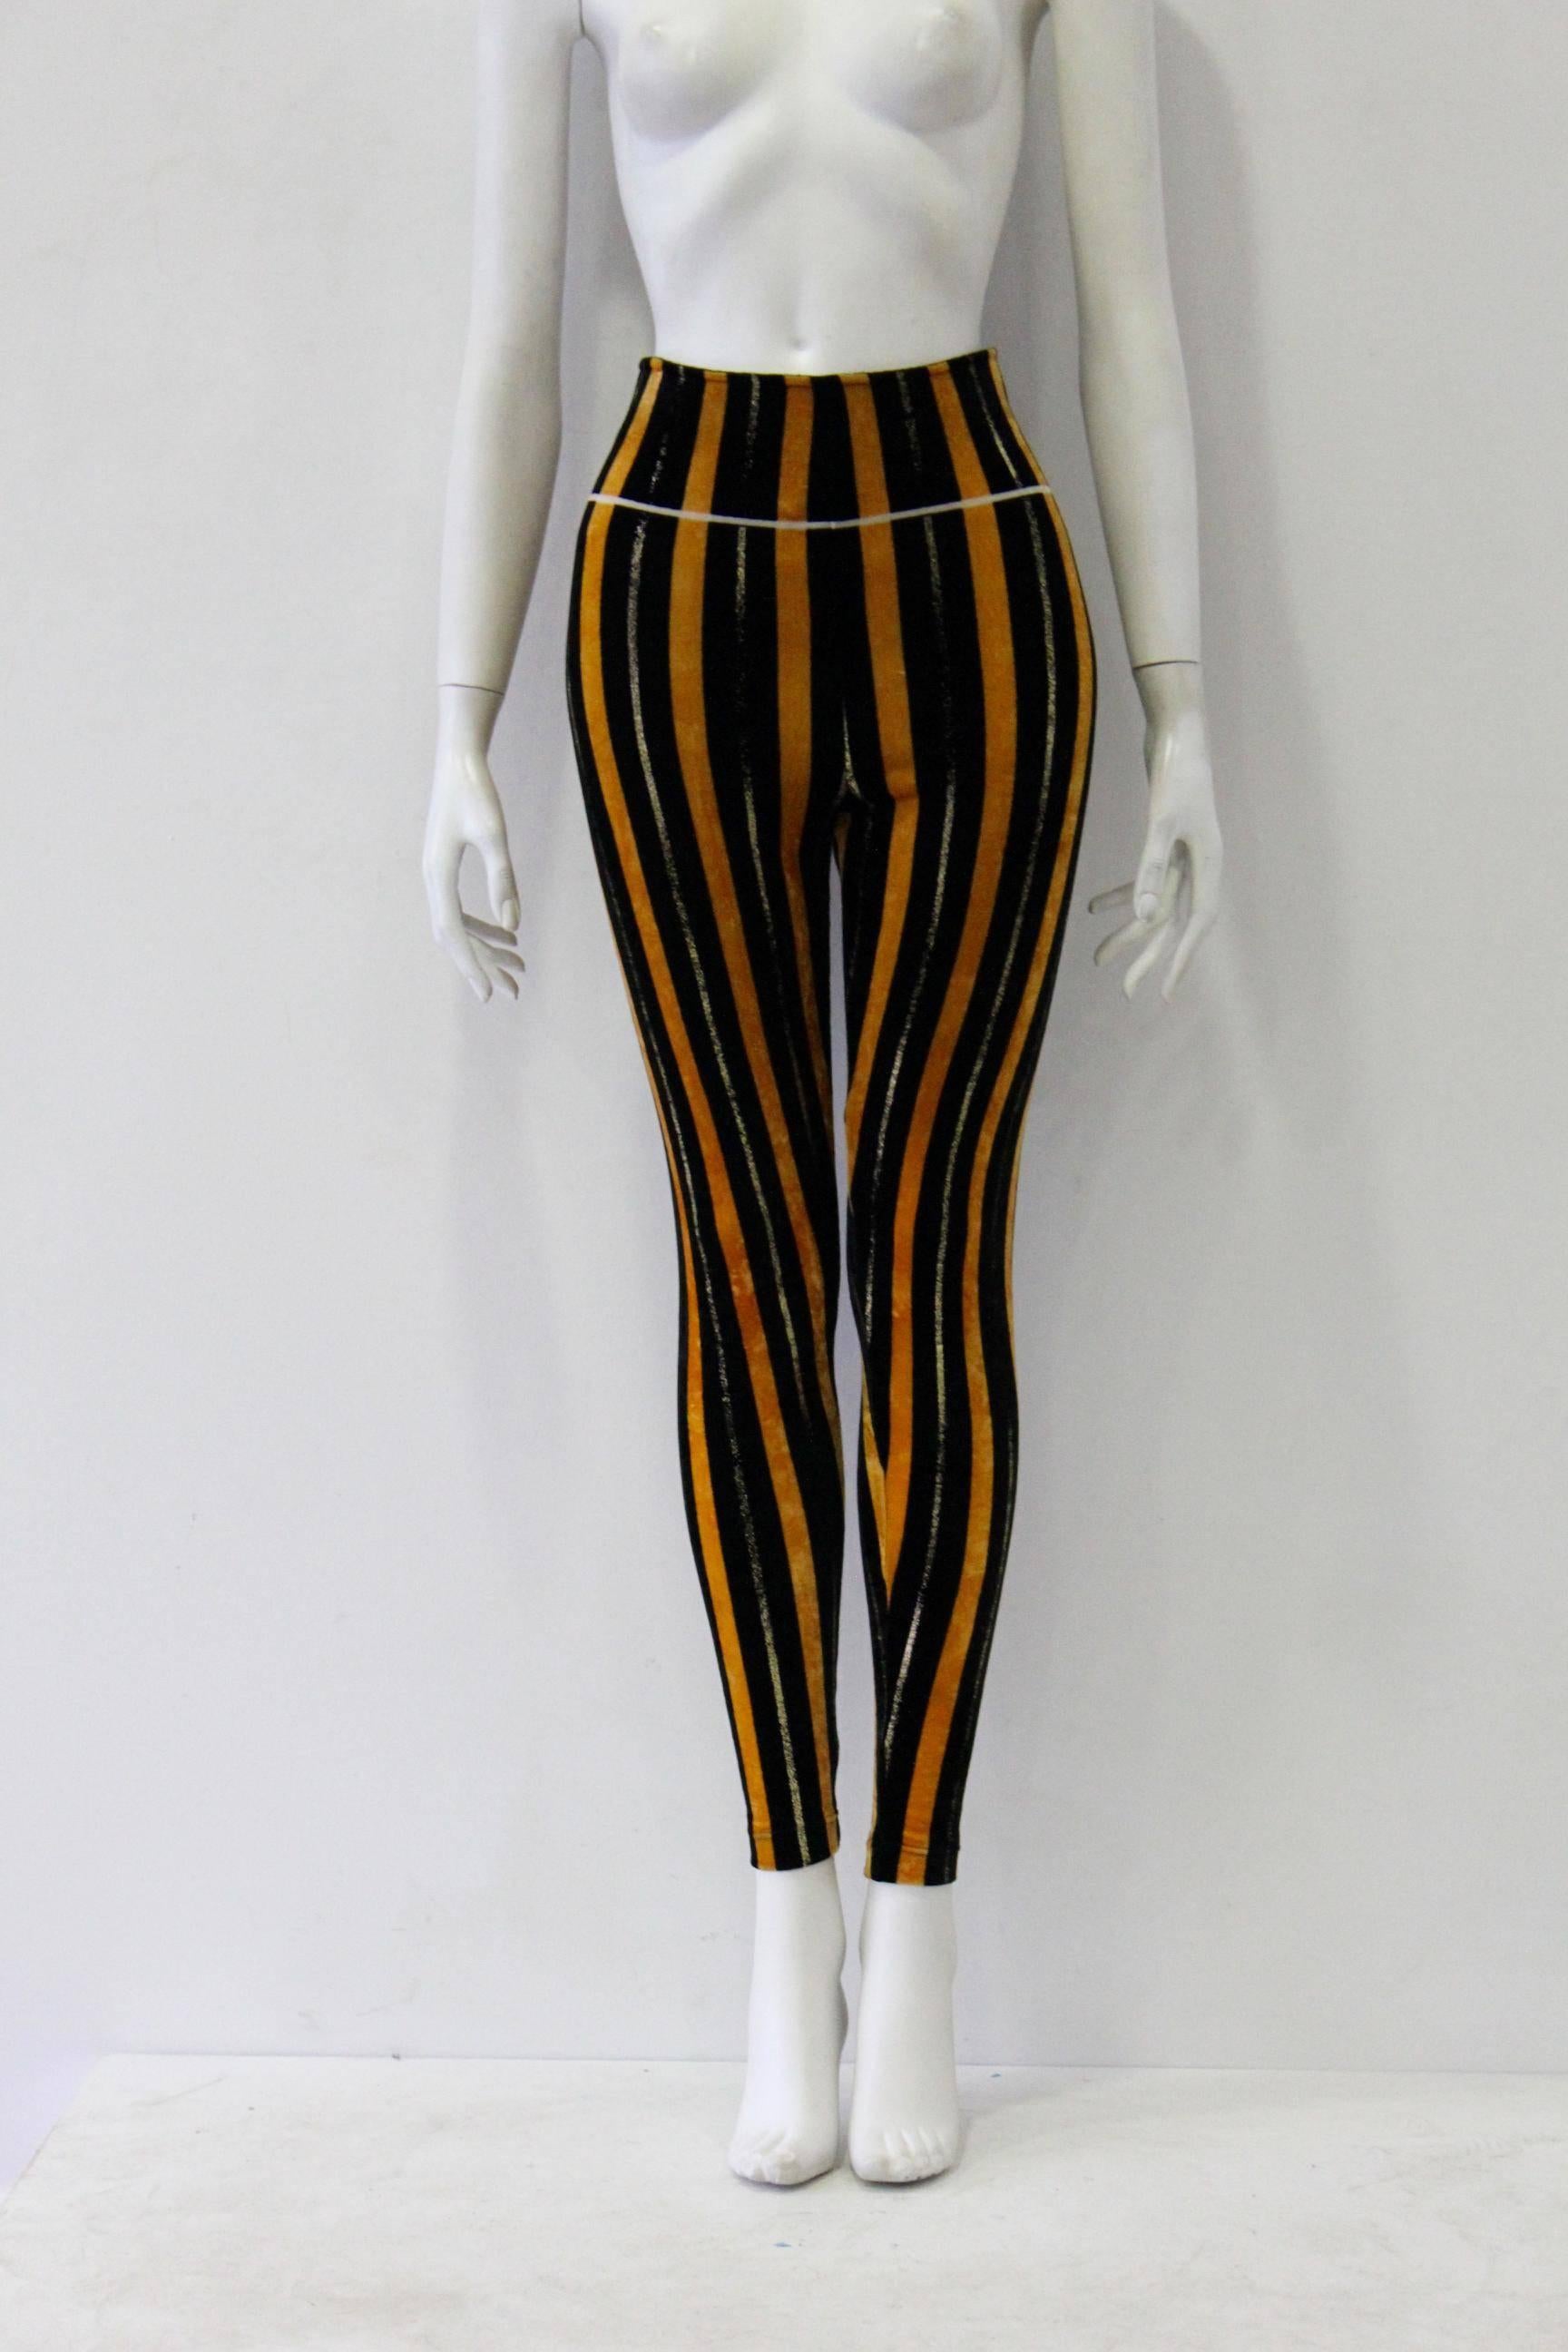 Black Rare Gianni Versace Couture Stripe Velvet Strech Leggings Fall 1994 For Sale